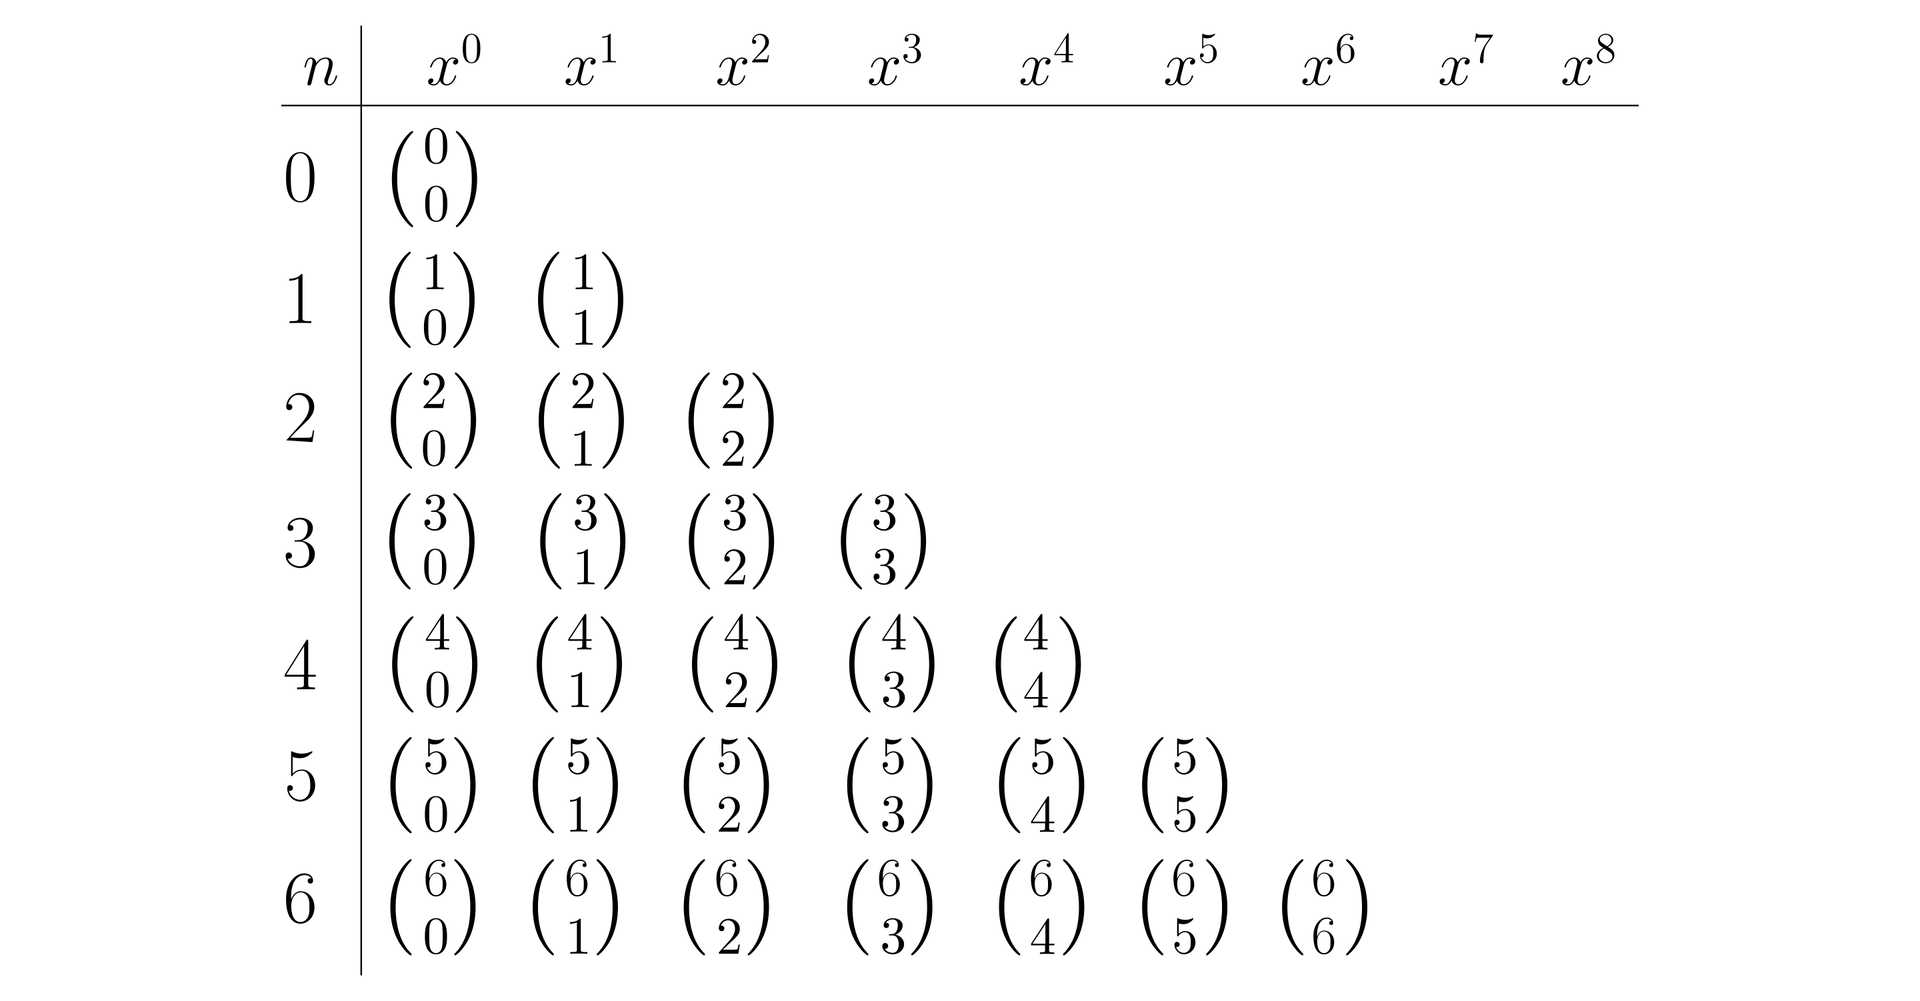 Ilustracja przedstawia tabelę. Kolejne kolumny tabeli zostały opisane w następujący sposób, pierwsza jest podpisana literą n, druga x do potęgi zerowej , trzecia x do potęgi pierwszej, i tak dalej aż do wartości x do potęgi ósmej. Zatem mamy  10 kolumn. W pierwszej kolumnie, podpisanej literą n,  znajdują się wartości od zera do sześciu. Zatem łącznie nasza tabela składa się z 6 wierszy. W drugiej kolumnie podpisanej x0 znajduje się 6 symboli newtona od : zero nad zero, jeden nad zero, dwa nad zero, trzy nad zero, cztery nad zero, pięć nad zero, sześć nad zero. W trzeciej kolumnie podpisanej x1 pierwszy wiersz jest pusty, zaczynając od drugiego wiersza mamy następujące symbole newtona: jeden nad jeden, dwa nad jeden, trzy nad jeden, cztery nad jeden, pięć nad jeden, sześć nad jeden. W czwartej kolumnie podpisanej x2, symbole zaczynają się dopiero w trzecim wierszu na wysokości cyfry dwa i są to kolejno: dwa nad dwa, trzy nad dwa, cztery nad dwa, pięć nad dwa, sześć nad dwa. W kolejnej kolumnie zaczynamy od czwartego wiersza i mamy: trzy nad trzy, cztery nad trzy, pięć nad trzy, sześć nad trzy. W szóstej kolumnie, zaczynamy od piątego wiersza i mamy: cztery nad cztery, pięć nad cztery, sześć nad cztery. W kolejnej kolumnie mamy już tylko dwa wyrażenia pięć nad pięć i sześć nad sześć, a w ostatniej kolumnie- ósmej, która jest podpisana x6, w ostatnim- szóstym wierszu mamy jeden symbol newtona sześć nad sześć.